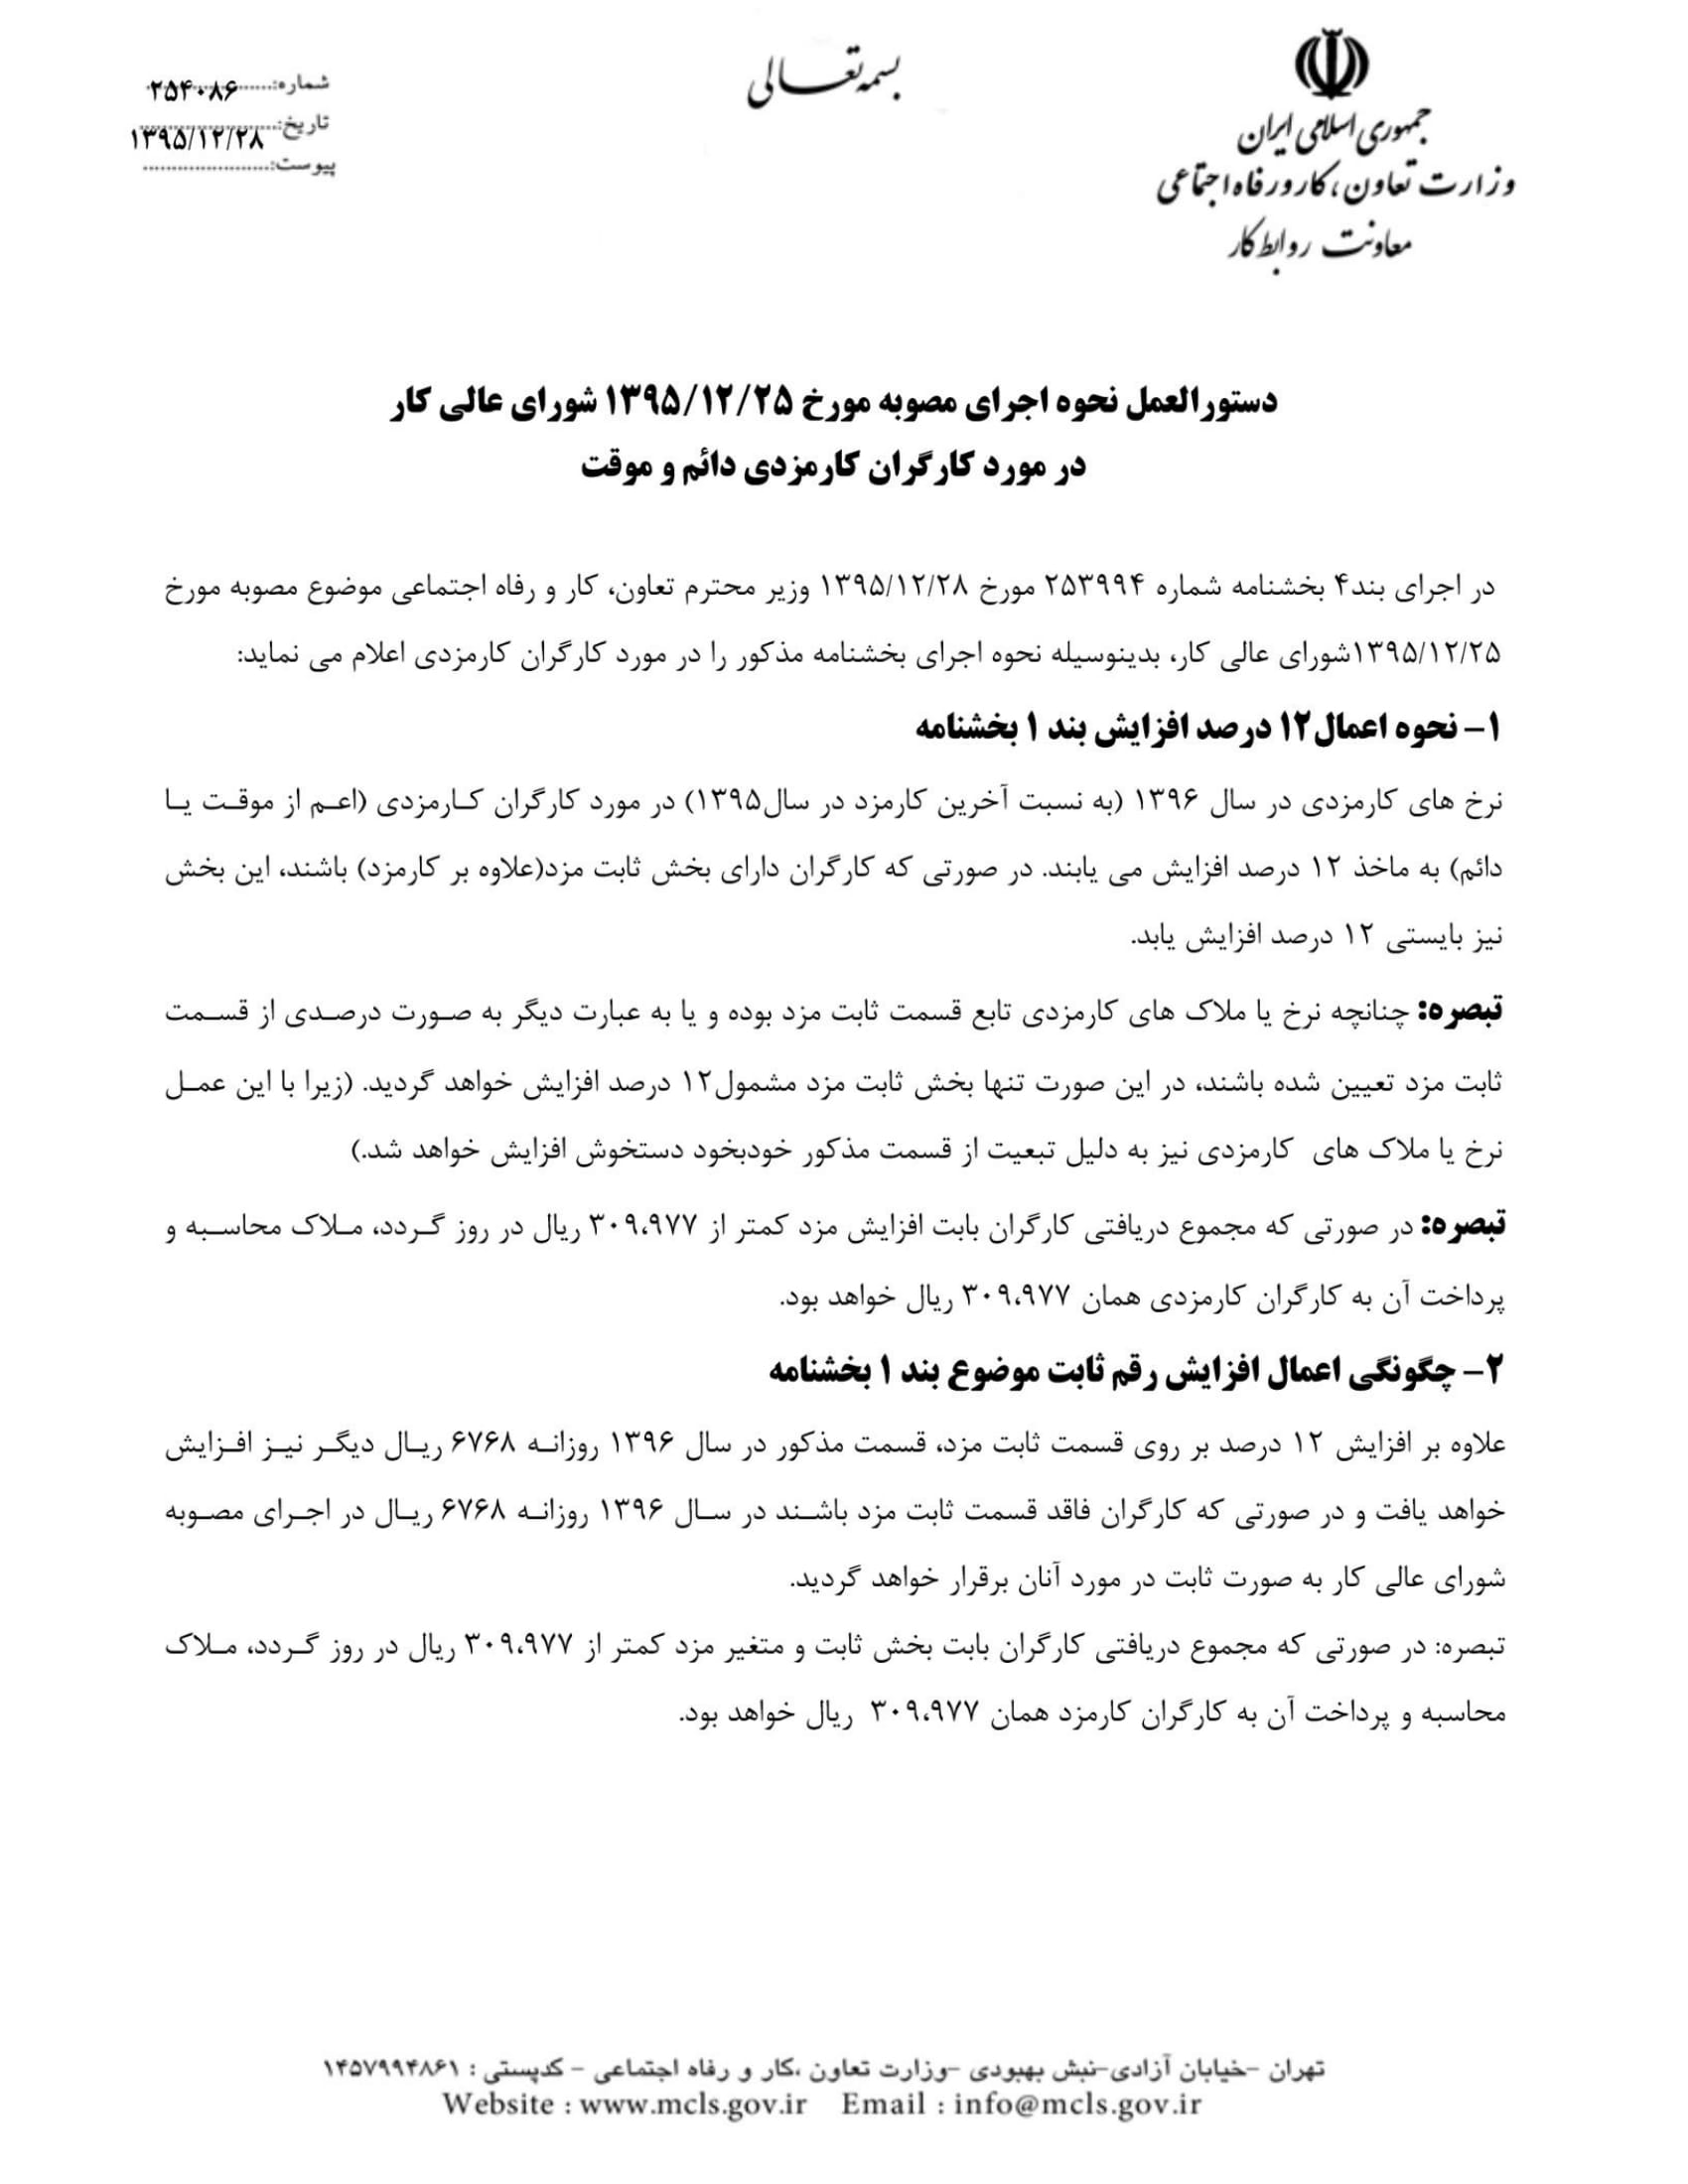 بخشنامه مقام عالی وزارت در خصوص دریافت اخبار و اطلاعات -5